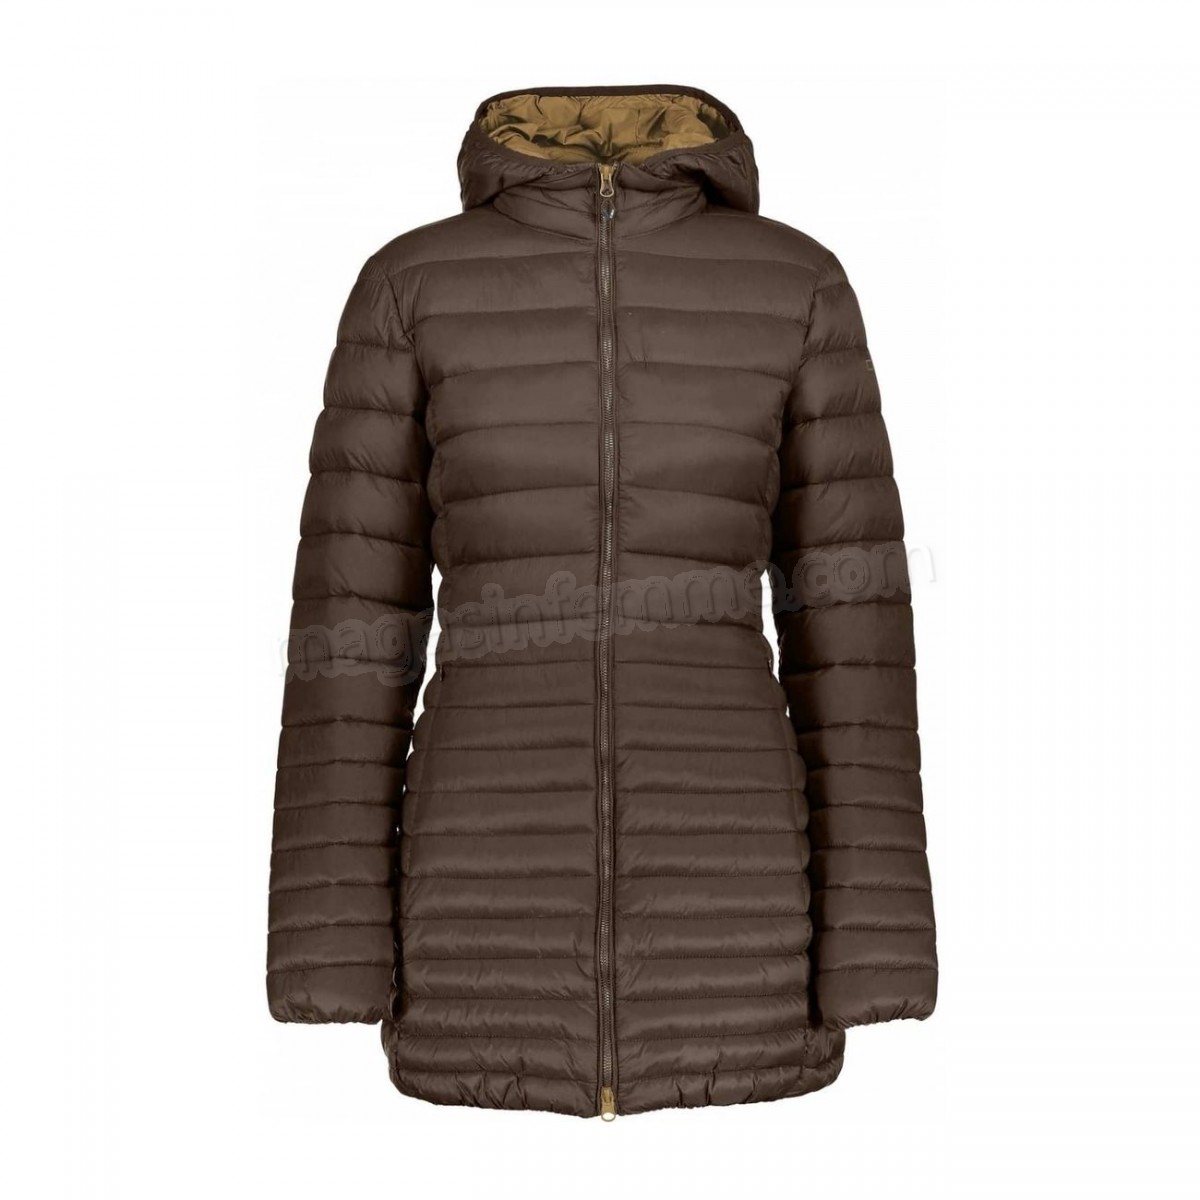 Cmp-Outdoor femme CMP CMP - Fixed Hood Coat veste polaire Stretch pour femmes (marron) en solde - -2